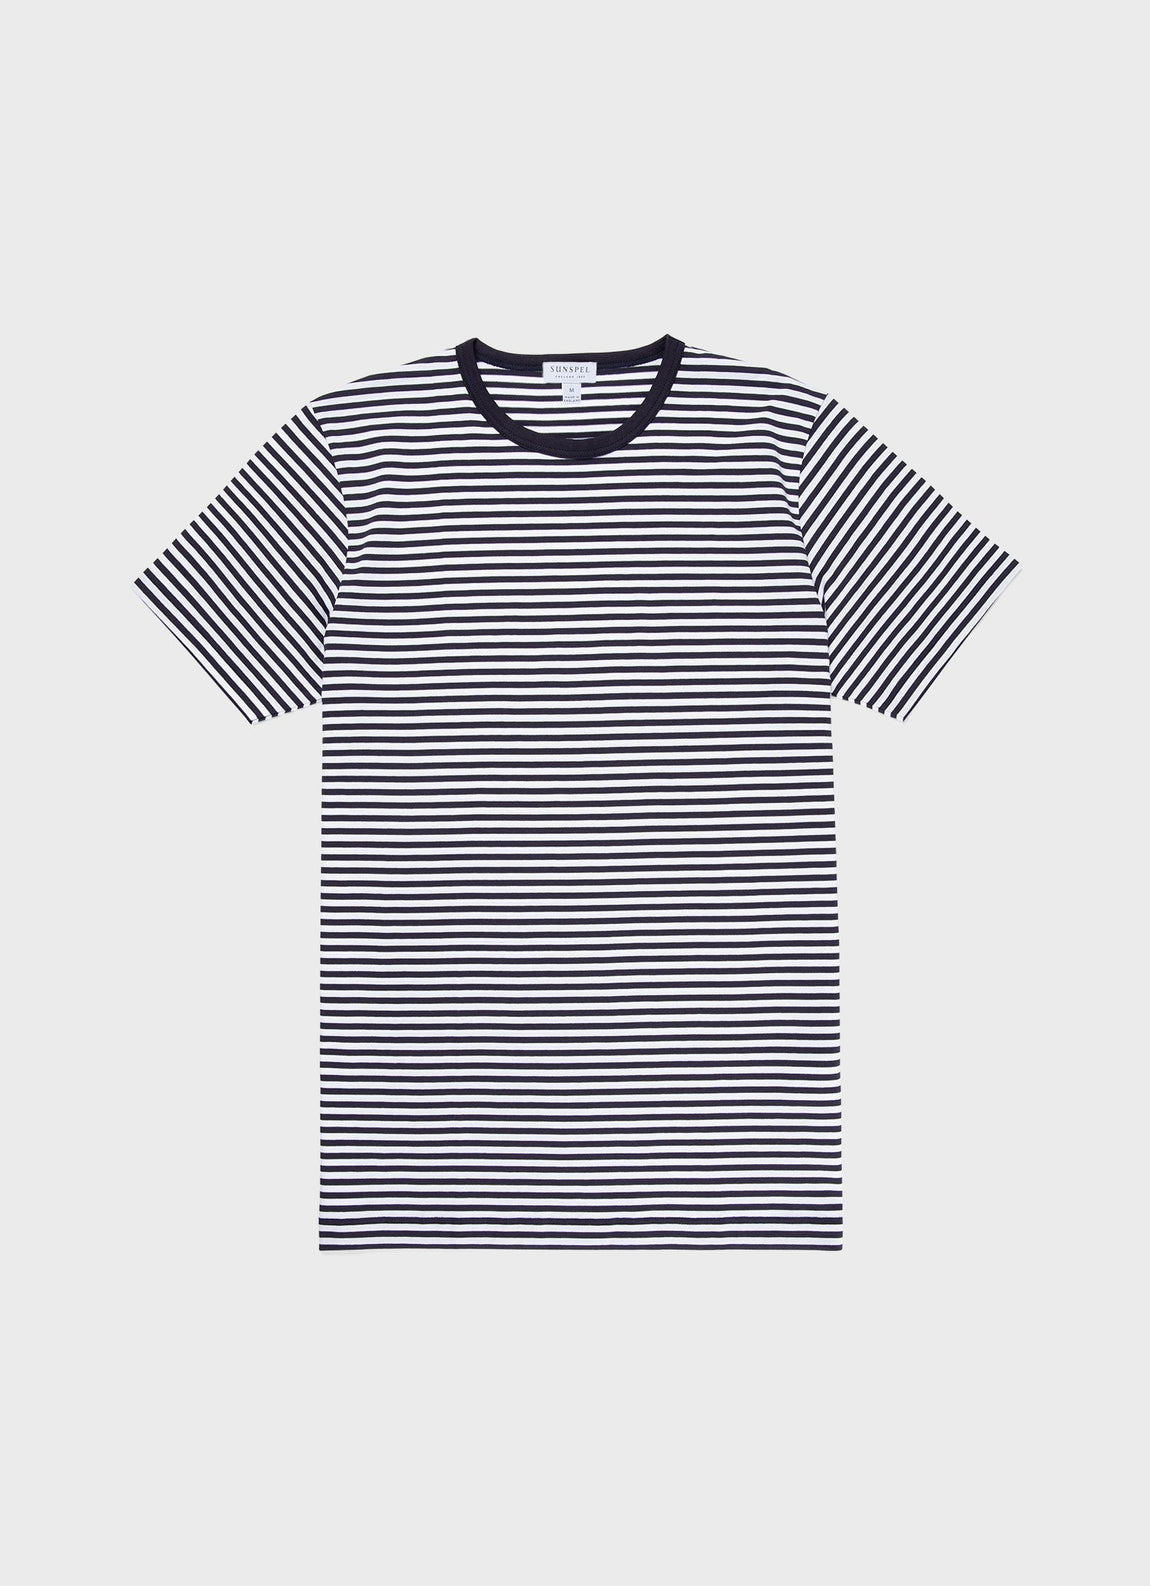 Men's Classic T-shirt in Navy/White English Stripe | Sunspel